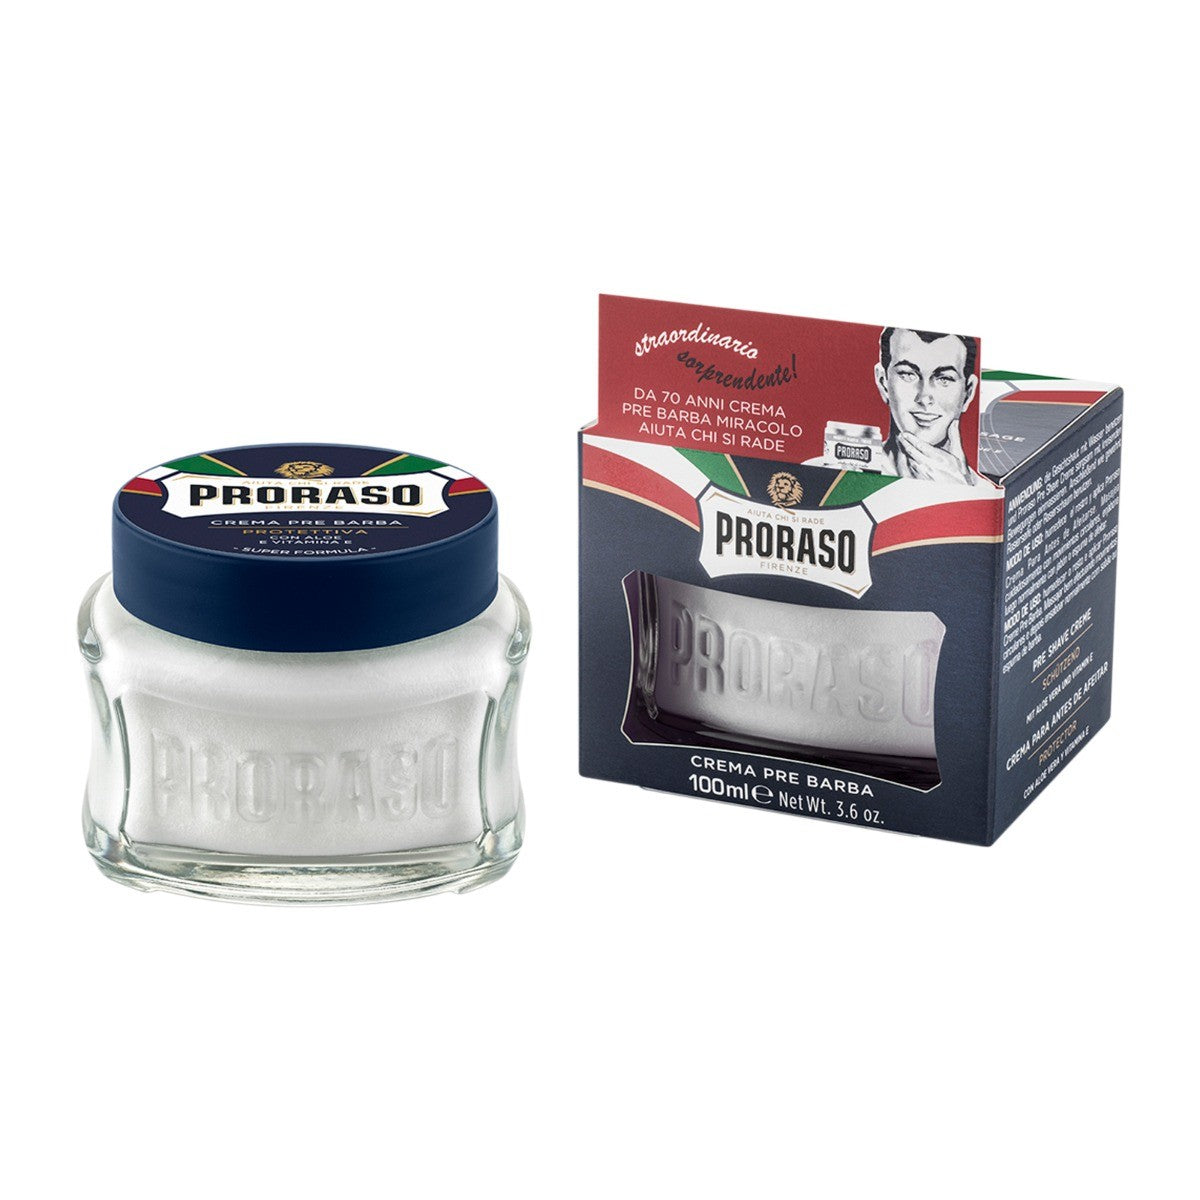 Proraso Pre-Shave Cream Protective with Aleo & Vitamin E 100ml - Blue